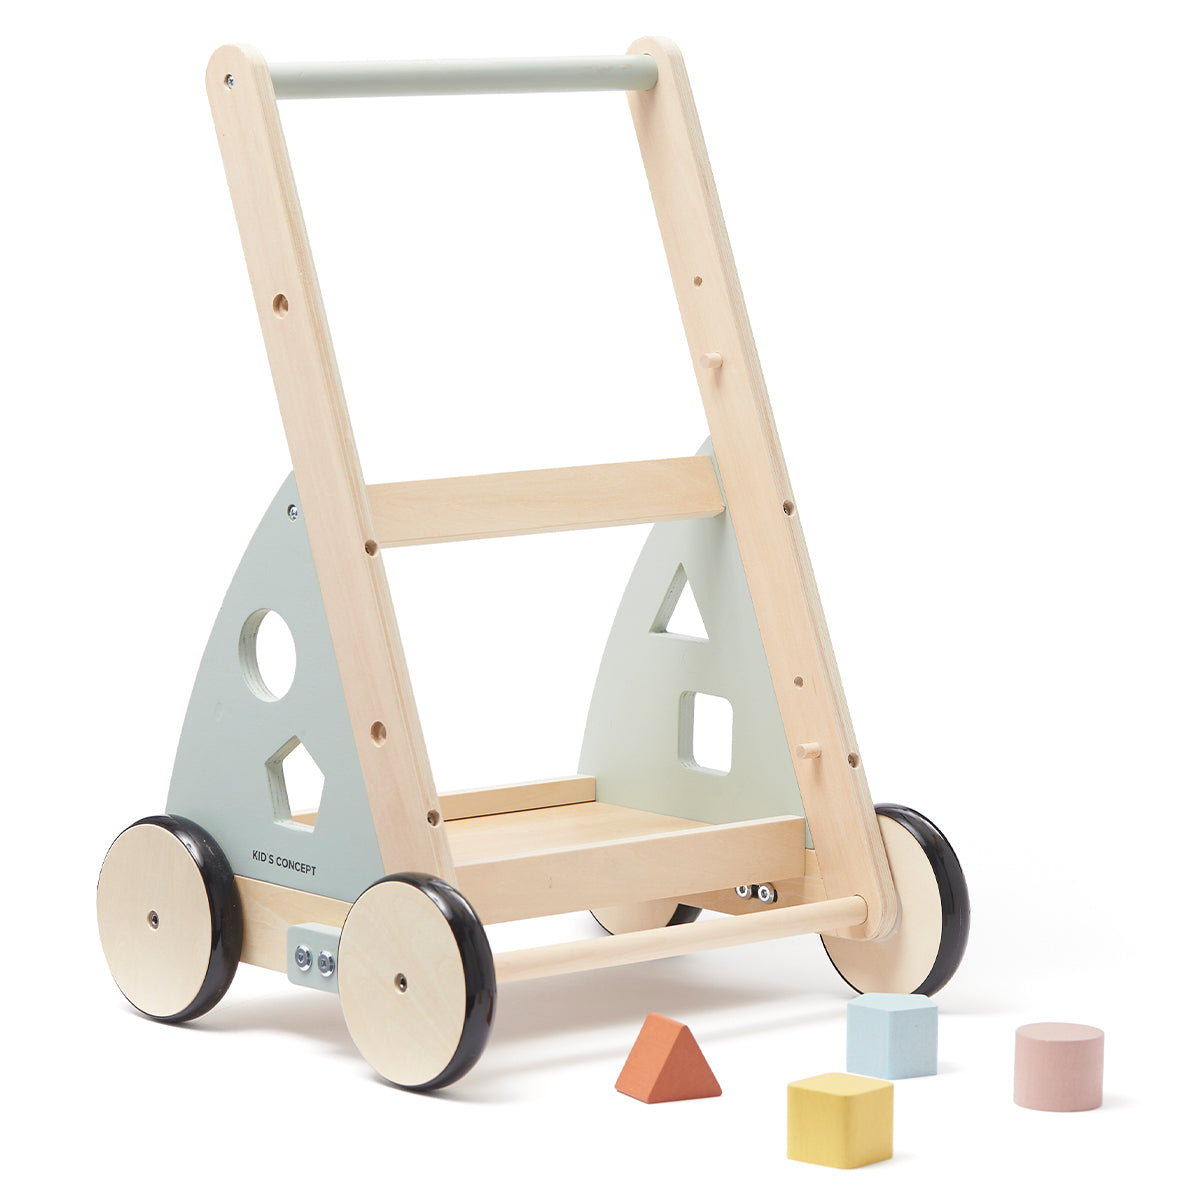 De Kid's Concept activiteiten loopwagen edvin is perfect voor wanneer jouw kleintje de eerste stapjes zet. Ook in de maanden daarvoor en daarna zorgt de loopwagen voor uren speelplezier. VanZus.